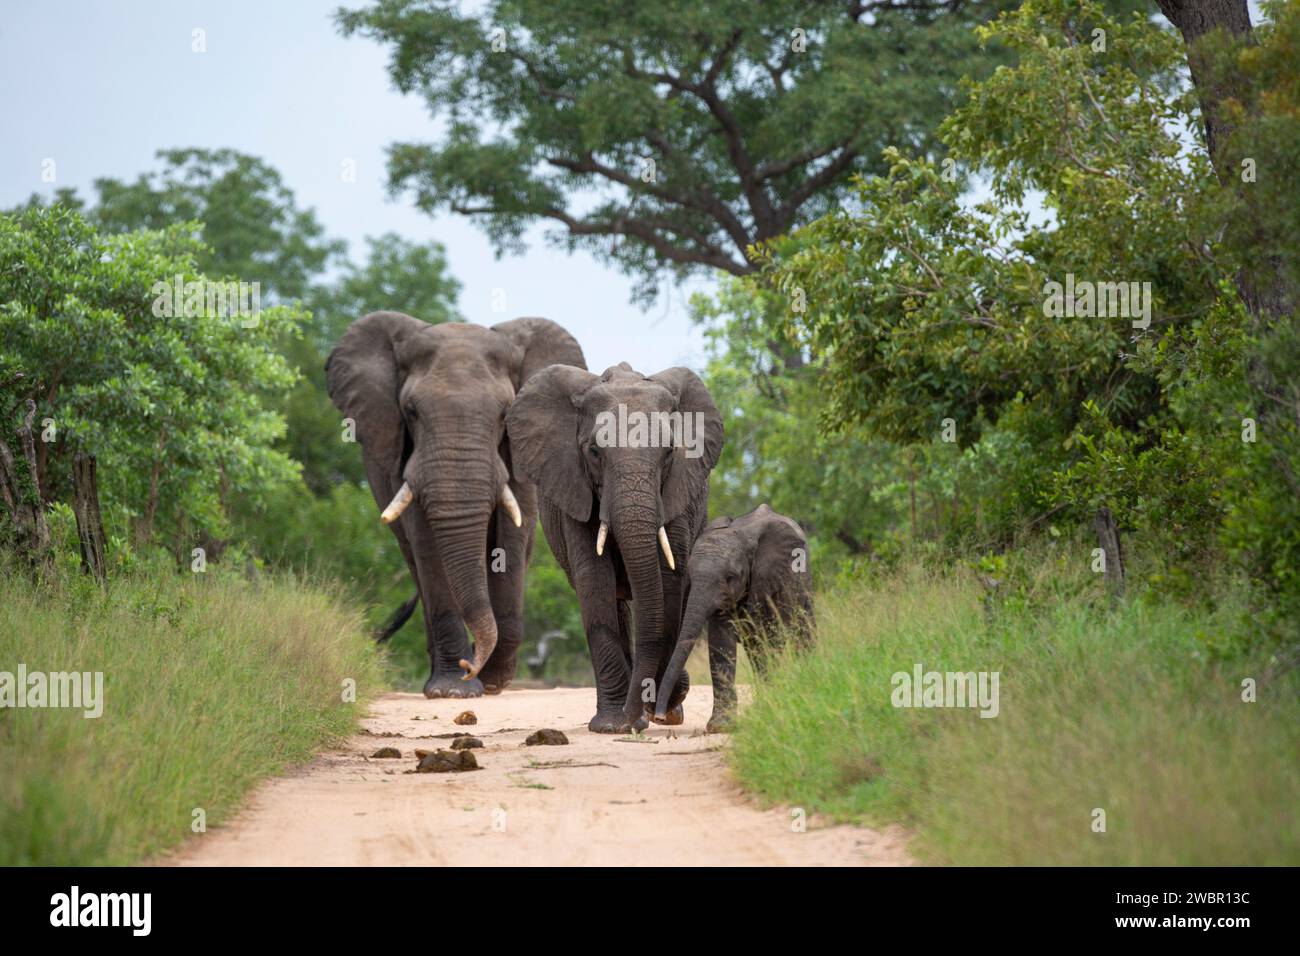 Elefante africano (Loxondota africana) mucca e vitello che camminano insieme su un sentiero boscato seguito da un toro fisicamente molto più grande Foto Stock